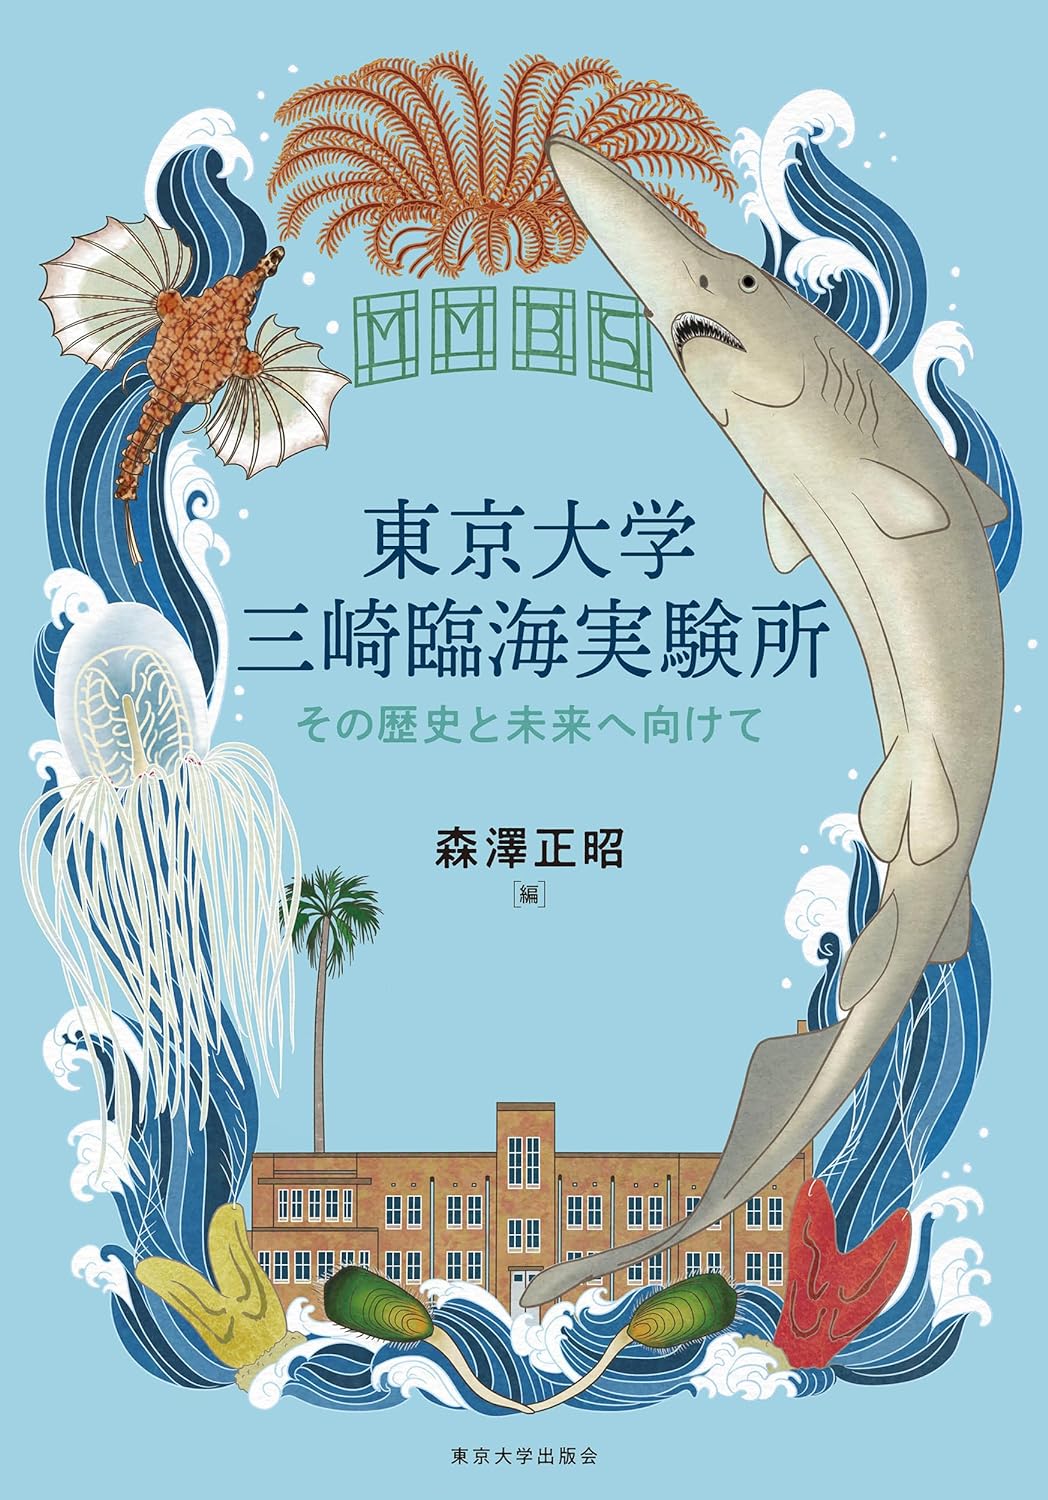 東京大學三崎臨海實驗所: その歷史と未來へ向けて